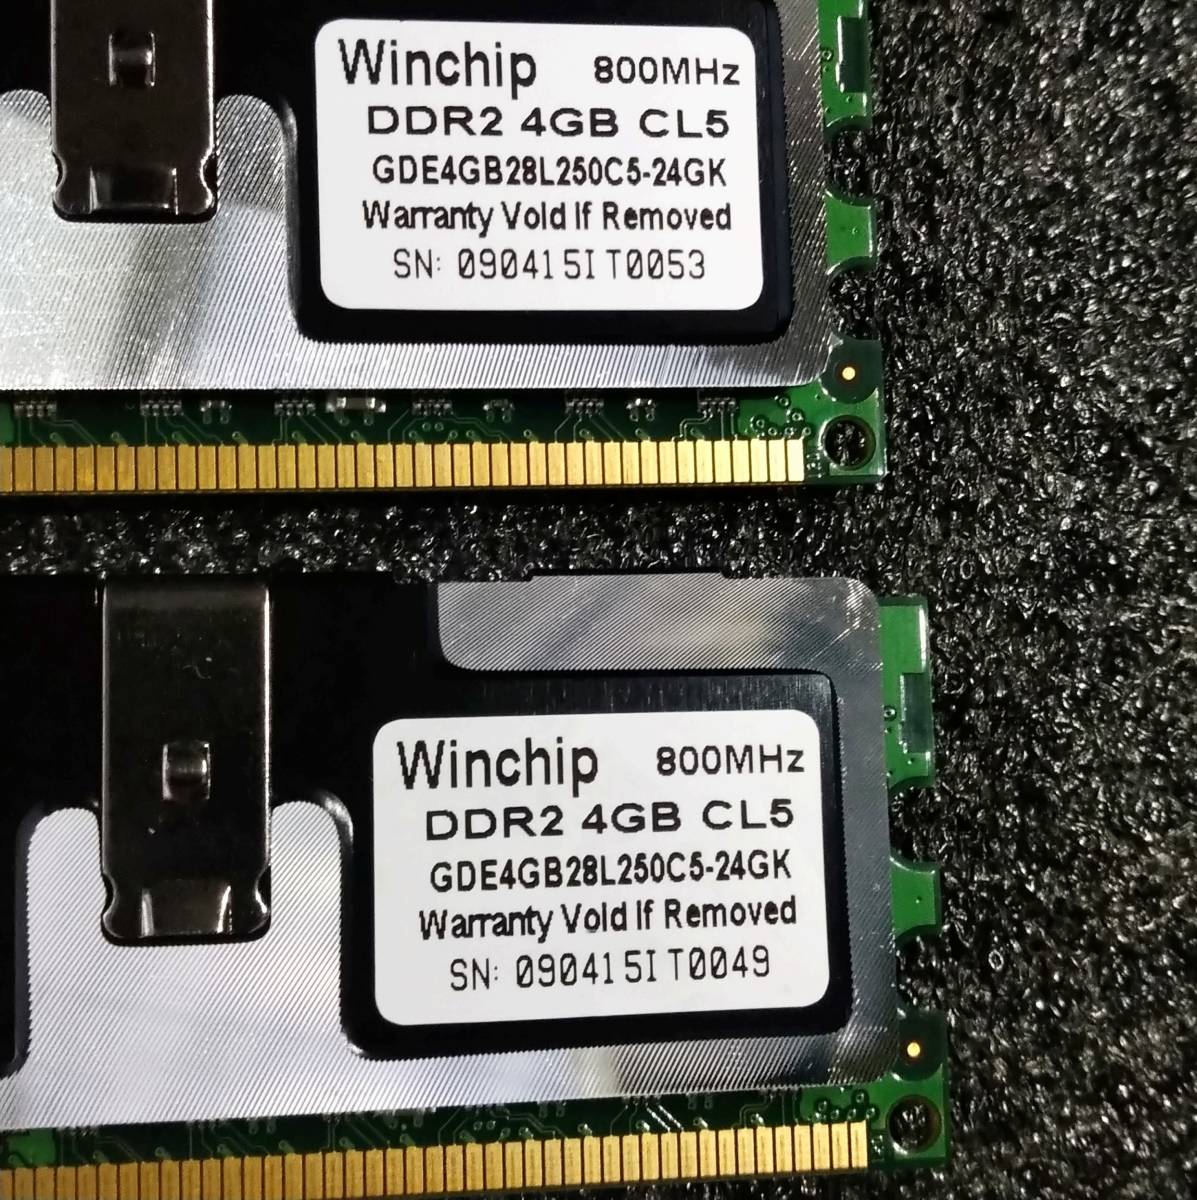 【中古】DDR2メモリ 16GB(4GB4枚組) Whinchip GDE4GB28L250C5-24GK [DDR2-800 PC2-6400]